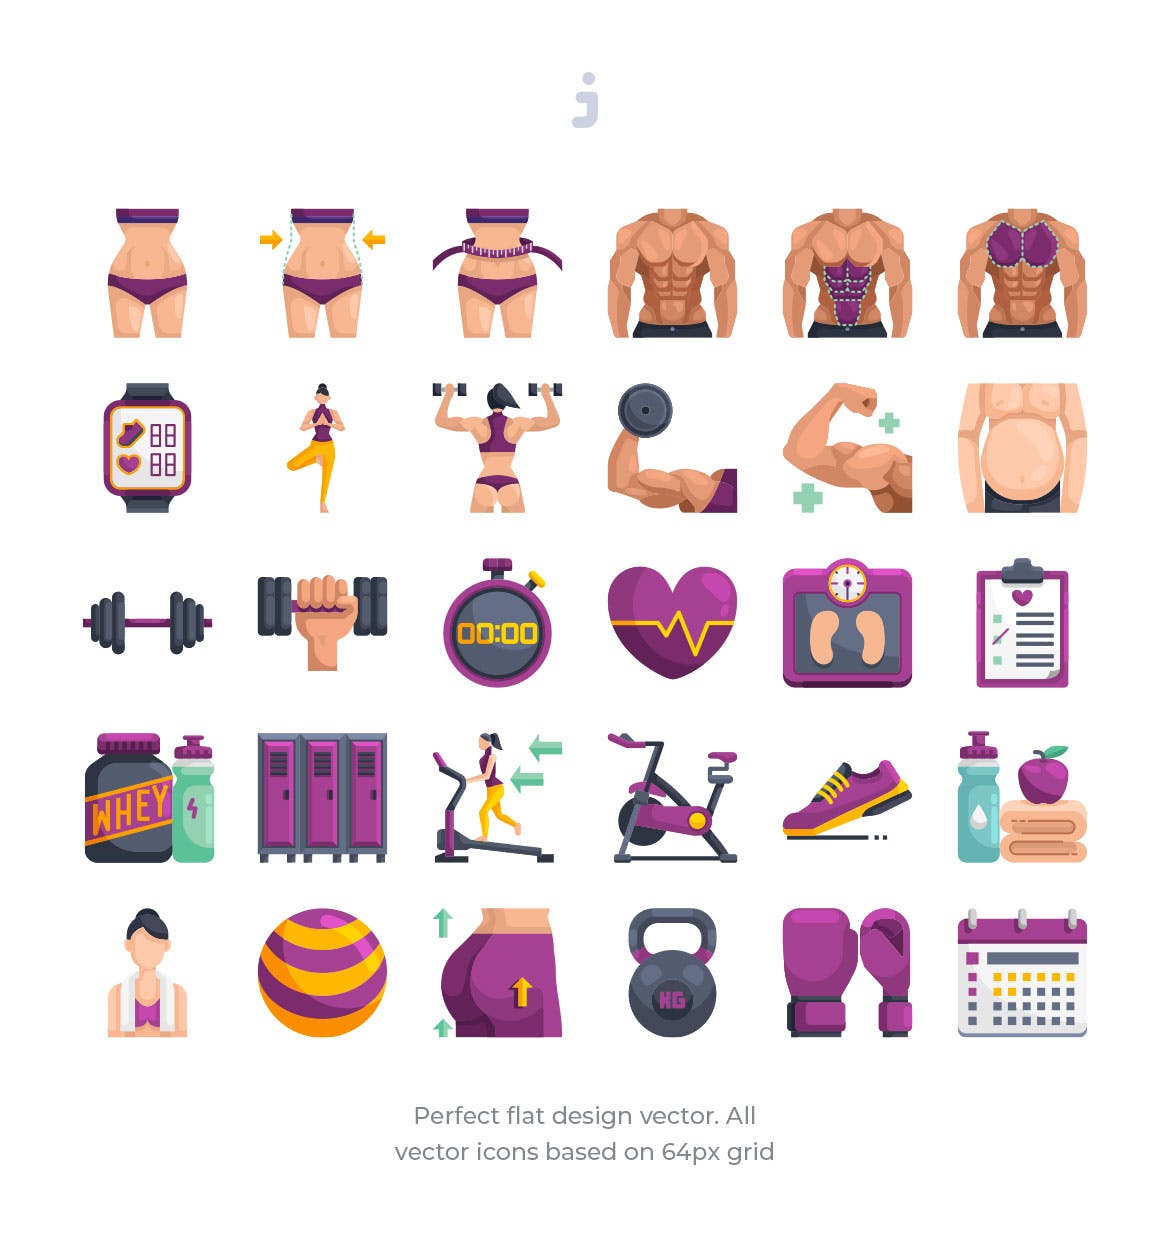 30枚健身运动主题扁平化矢量蚂蚁素材精选图标 30 Fitness & Gym Icons – Flat插图(1)